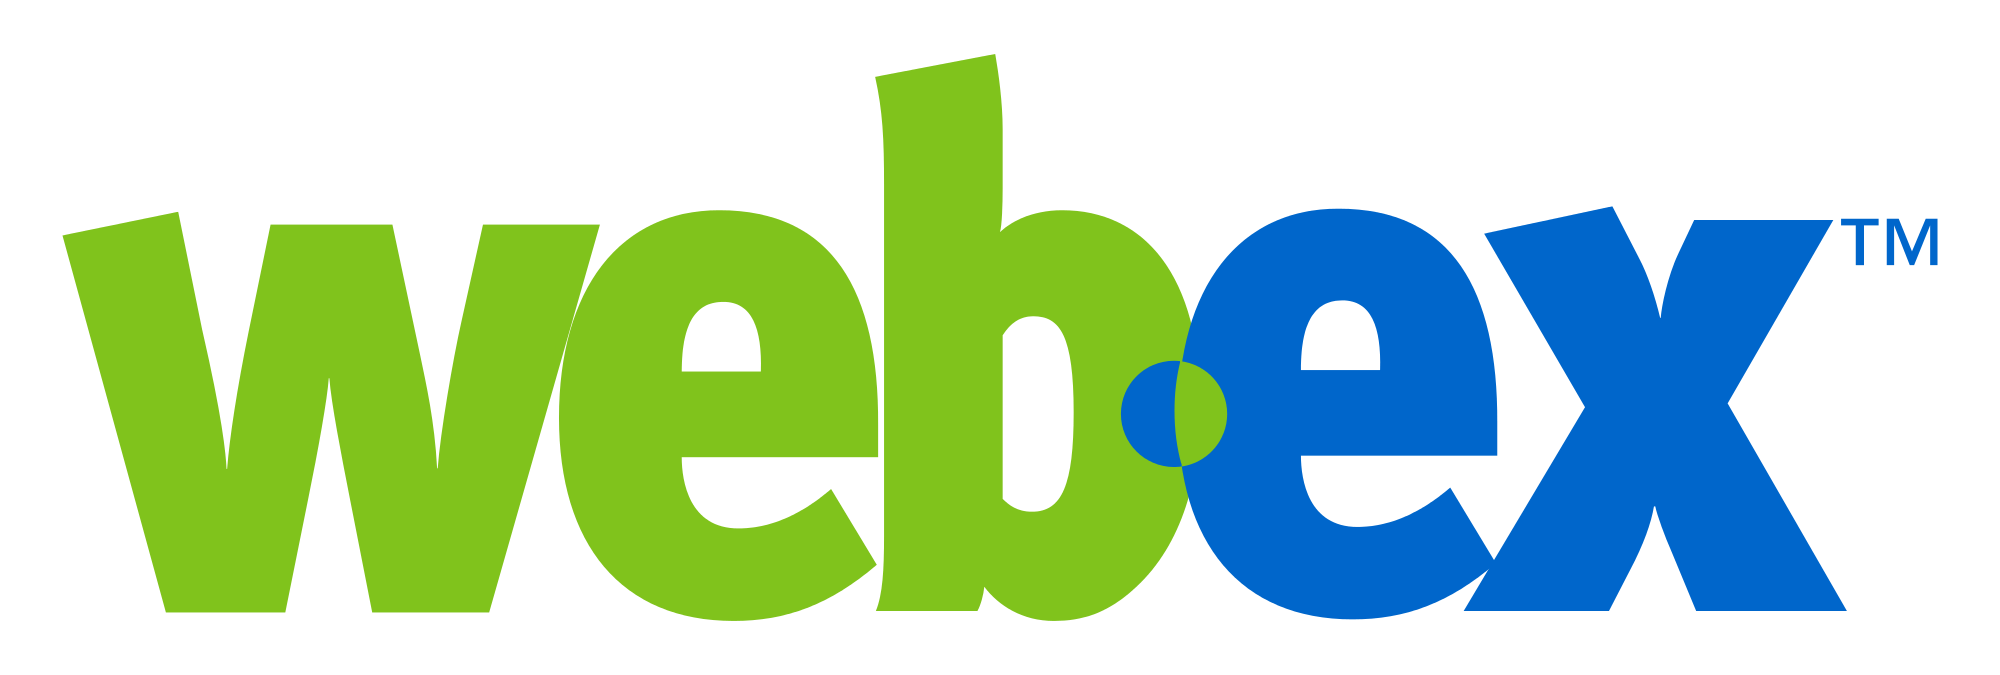 WebEx Logo - WebEx logo.svg